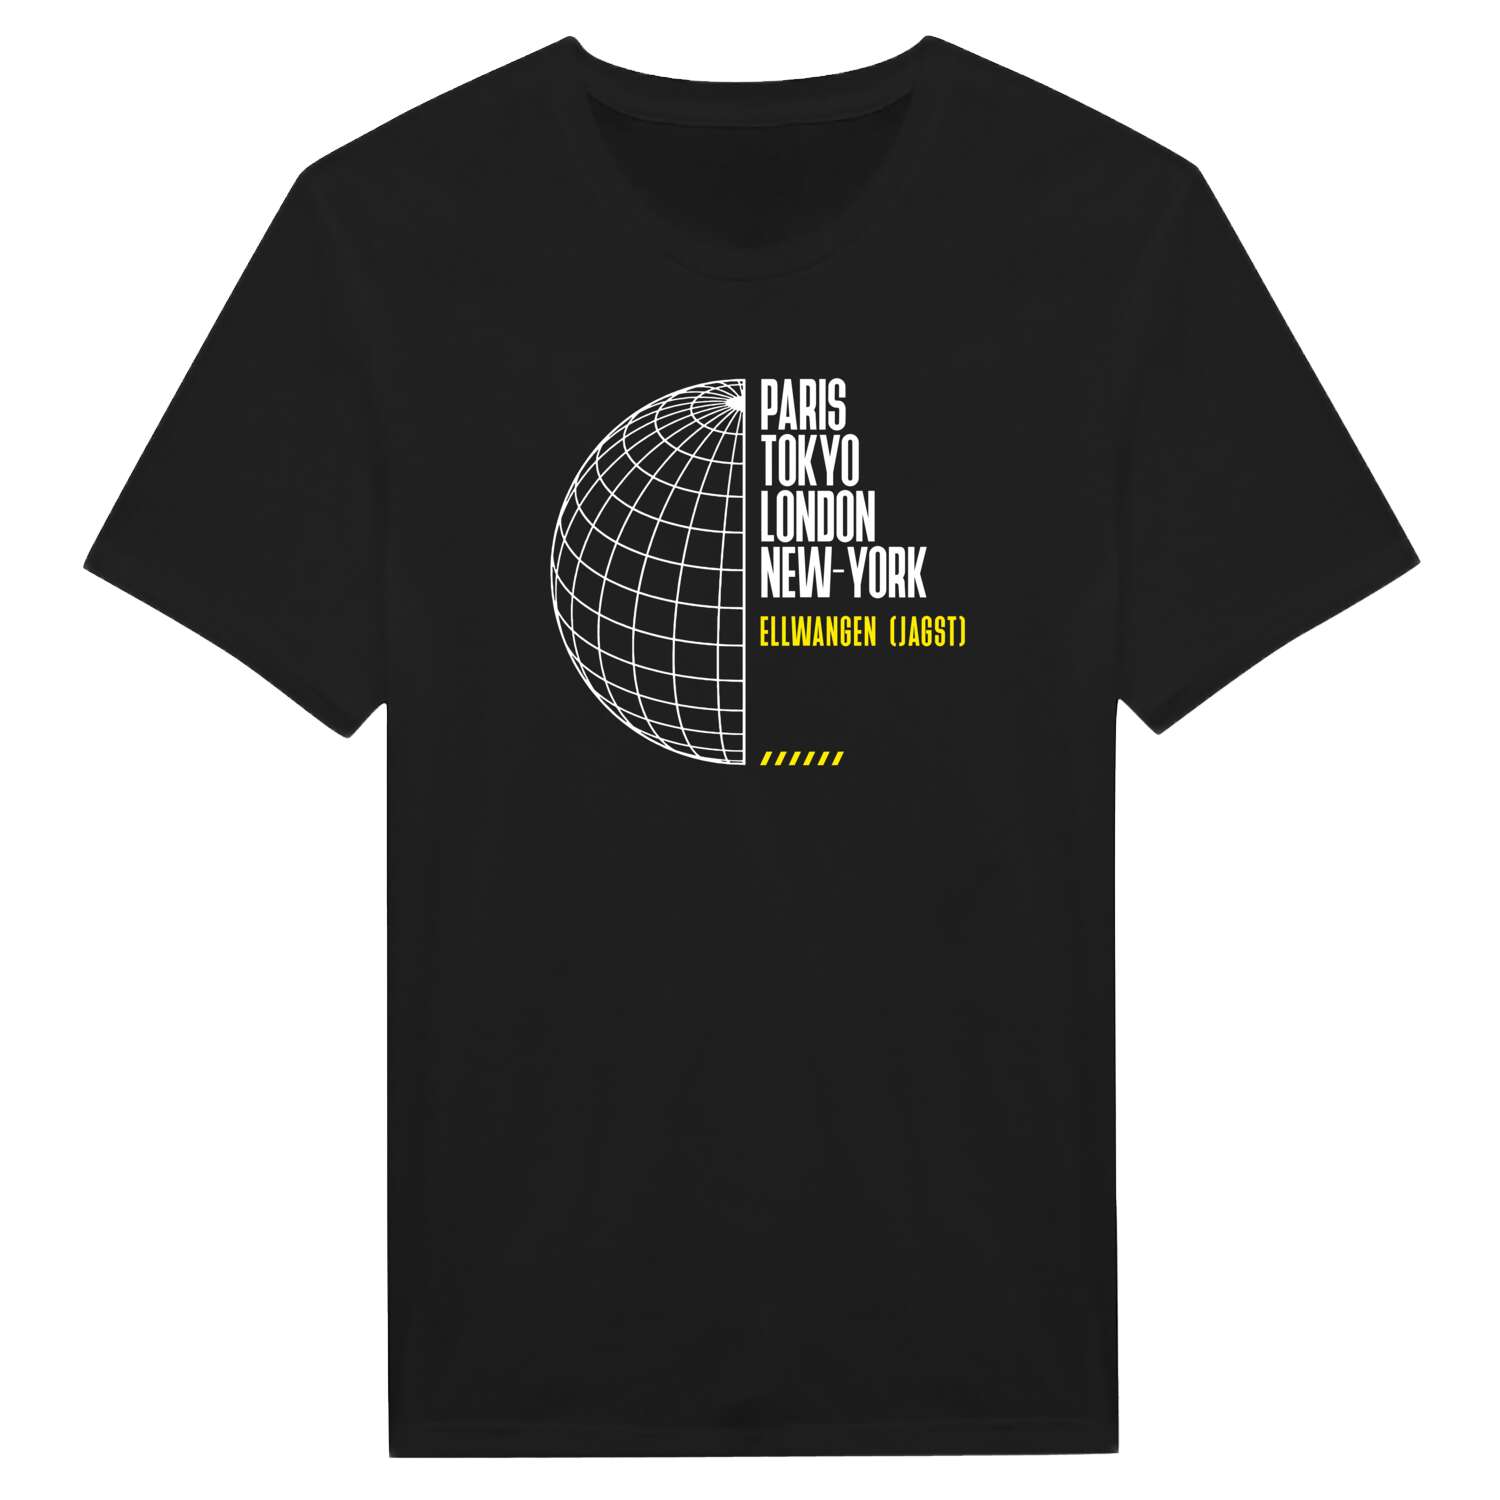 Ellwangen (Jagst) T-Shirt »Paris Tokyo London«